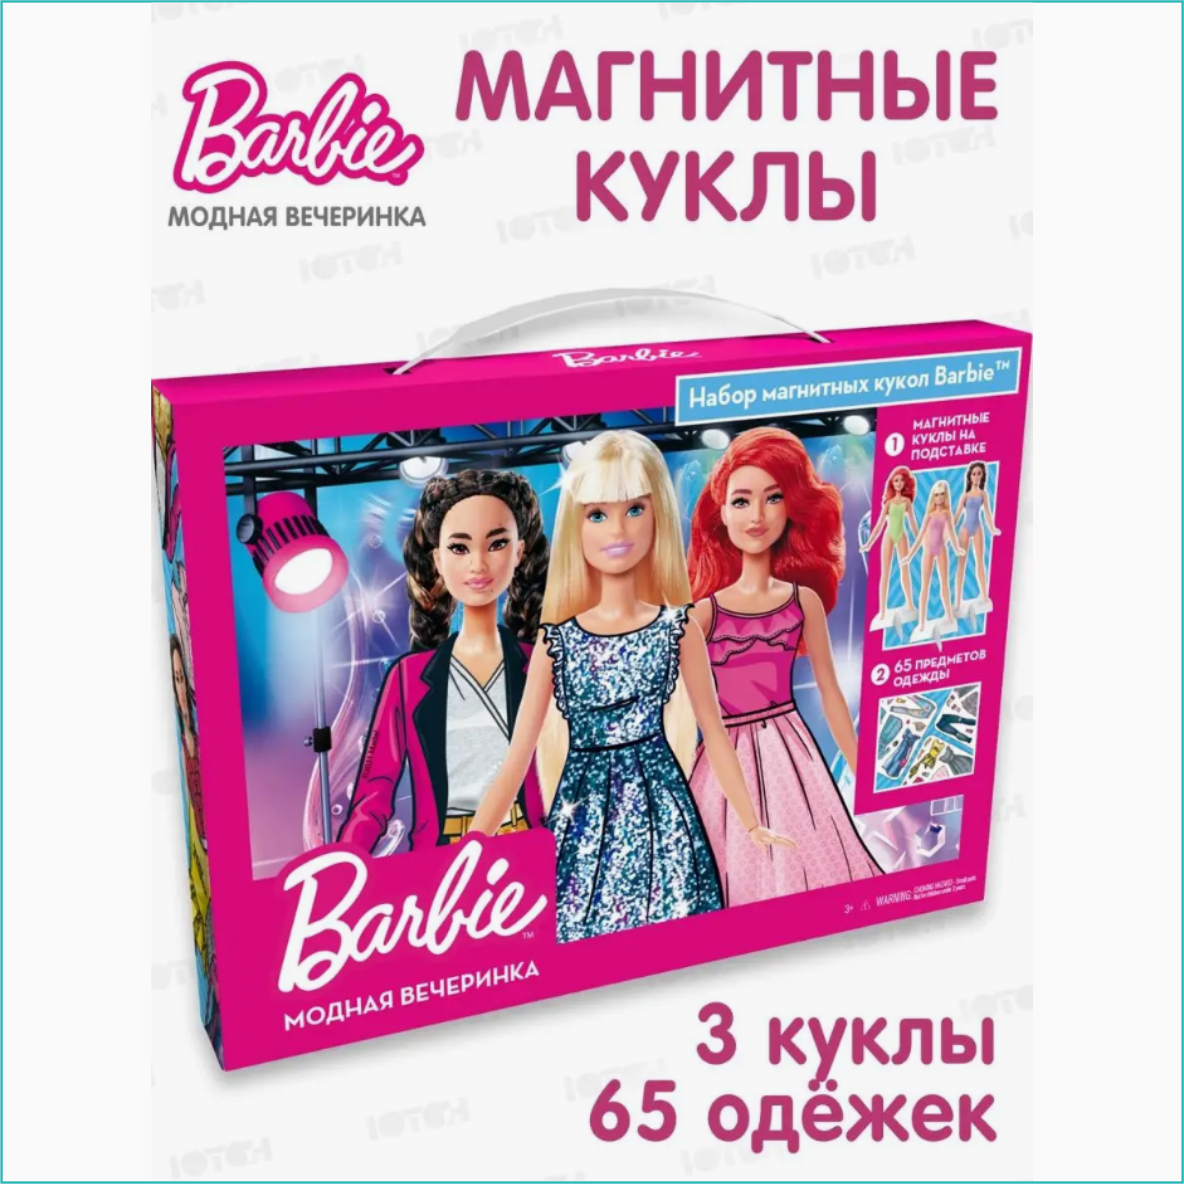 Магнитные куклы "Барби - Модная вечеринка" Barbie (3 куклы 65 одежек)